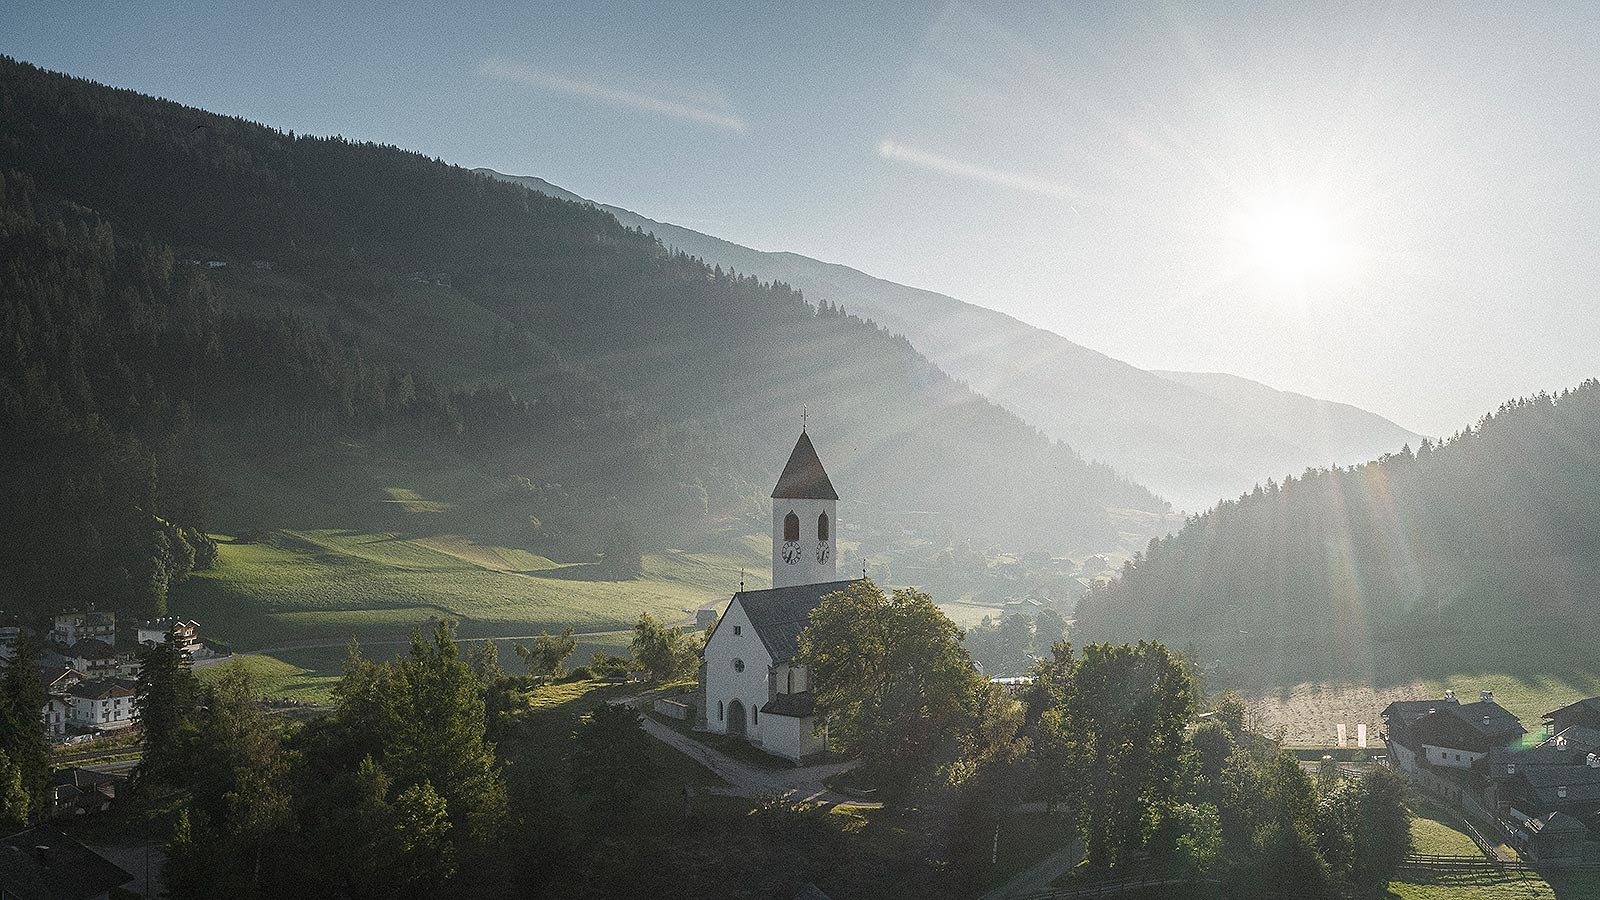 Kleine weiße Kirche mit Glockenturm inmitten der Pustertaler Hügellandschaft, die am späten Nachmittag von der Sonne beleuchtet wird.